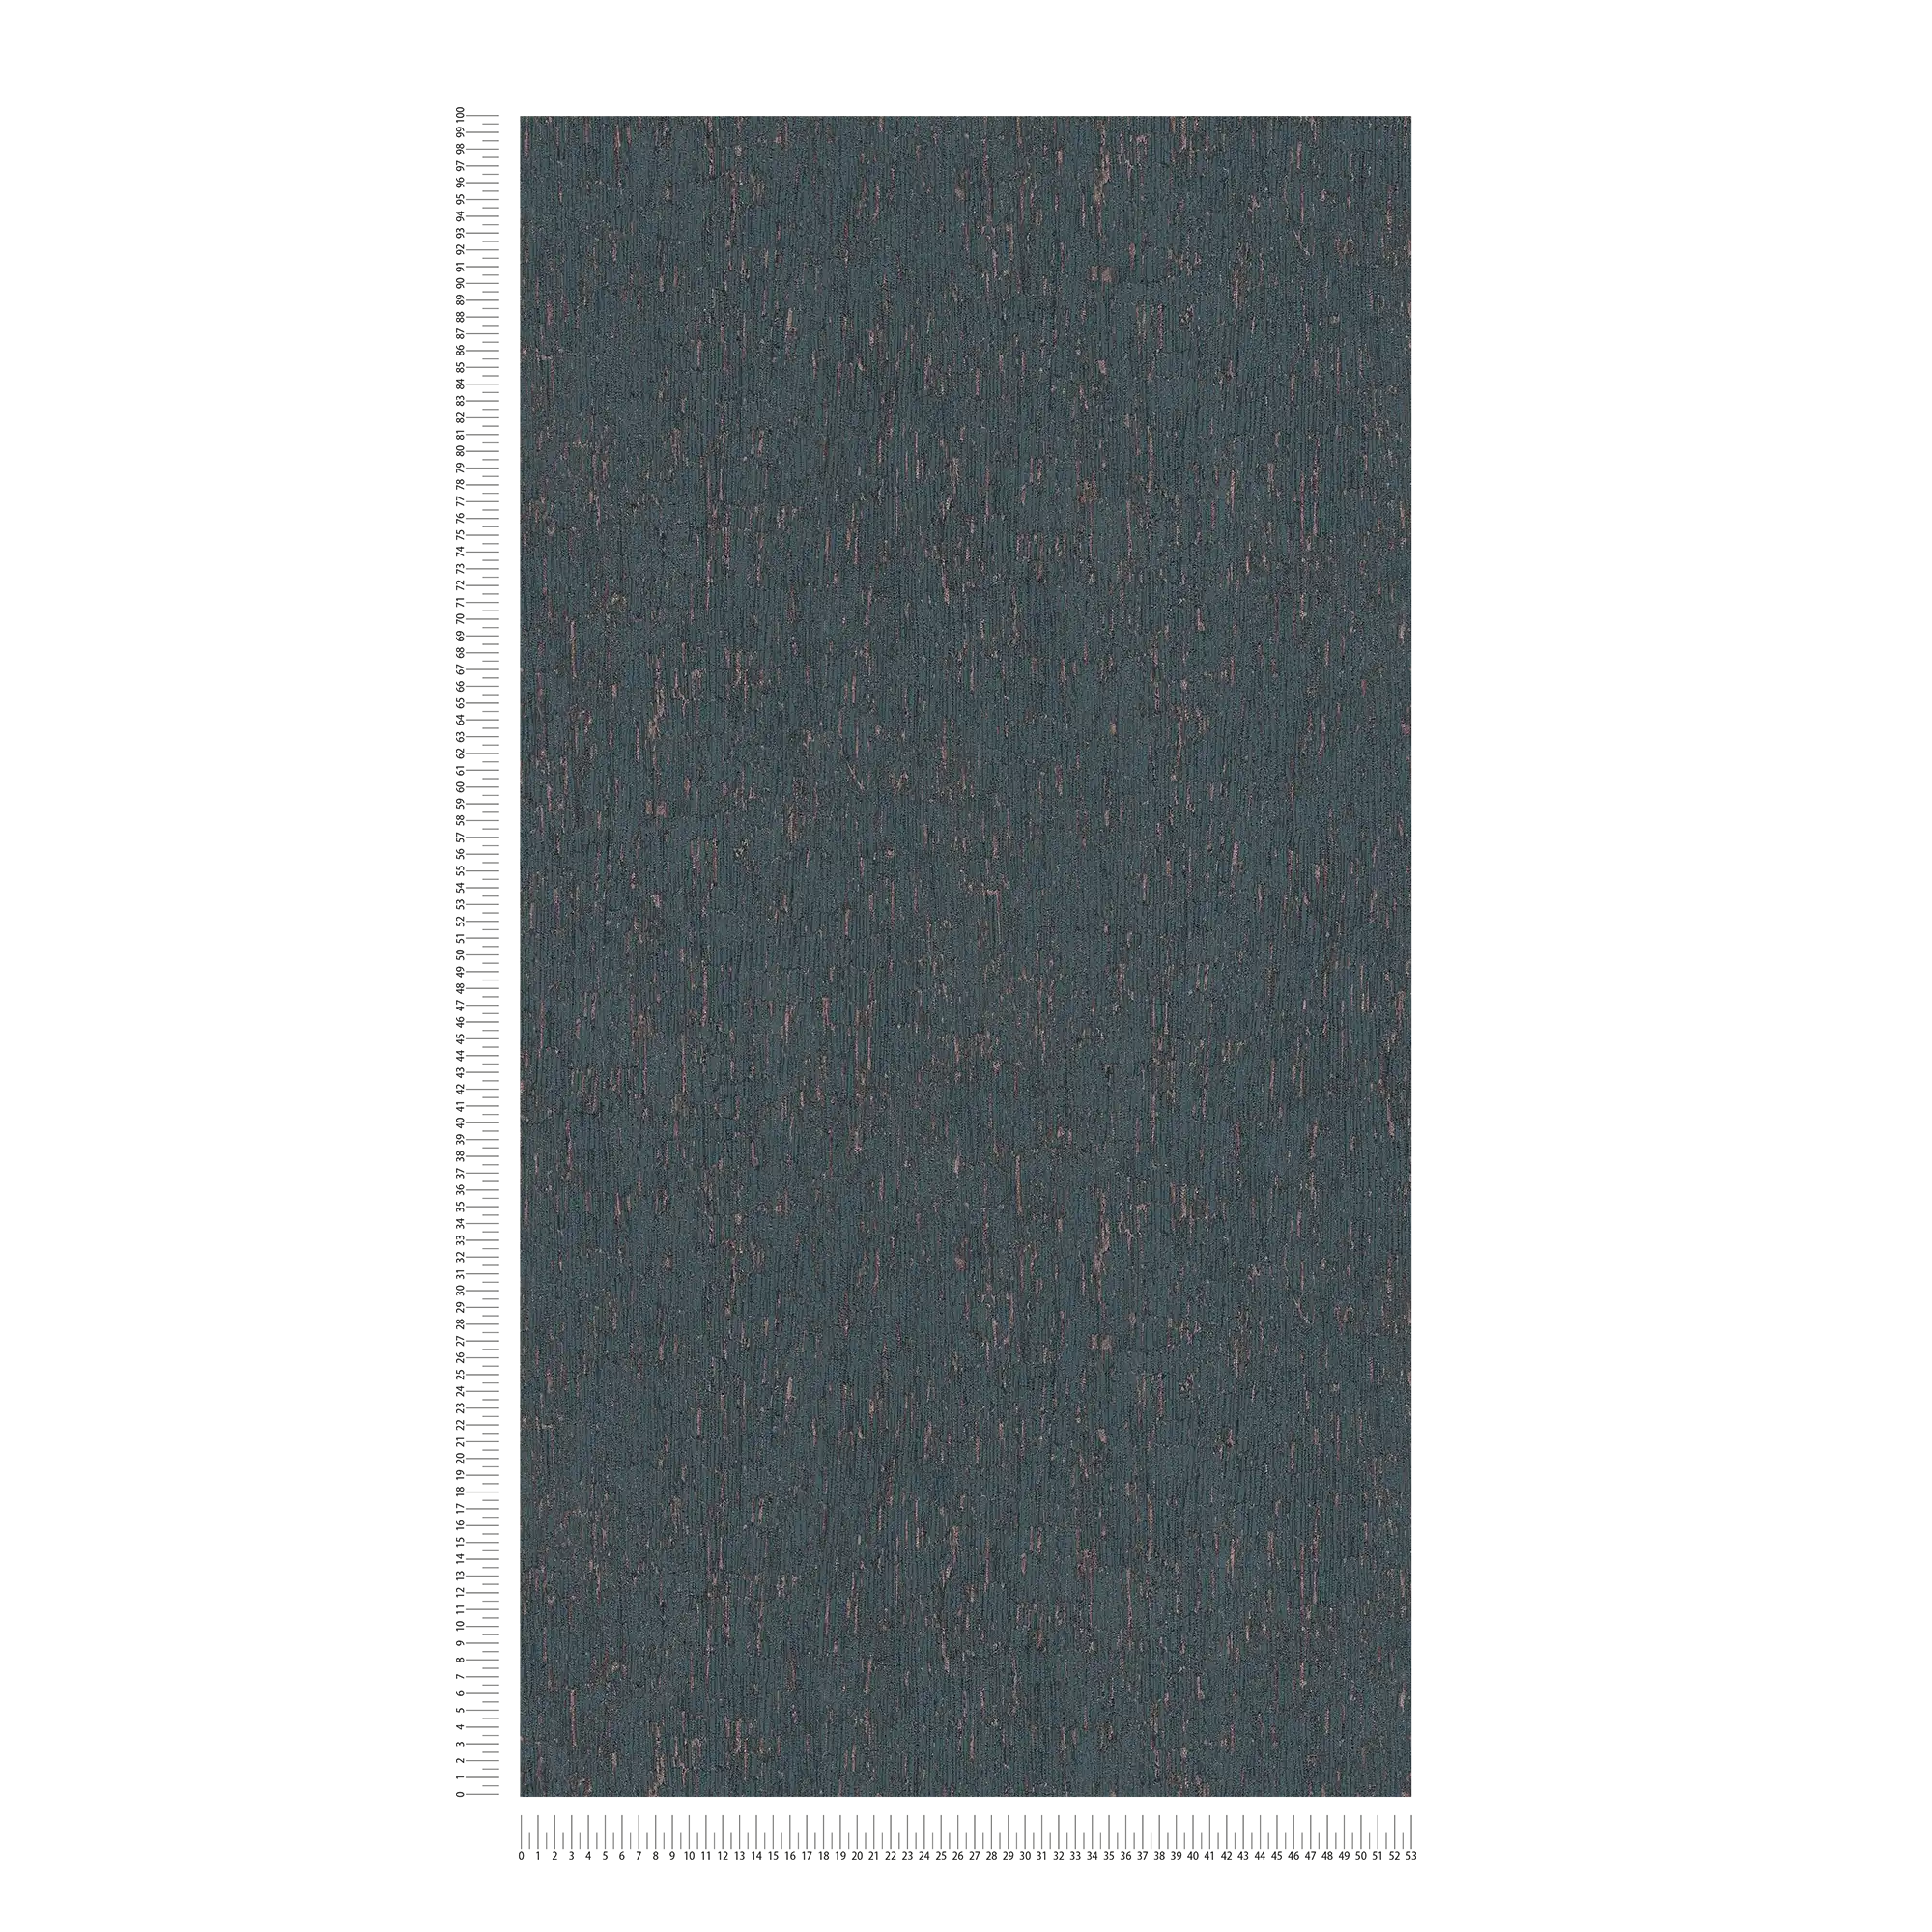             Carta da parati non tessuta con effetto intonaco e accenti blu, bronzo e metallizzati.
        